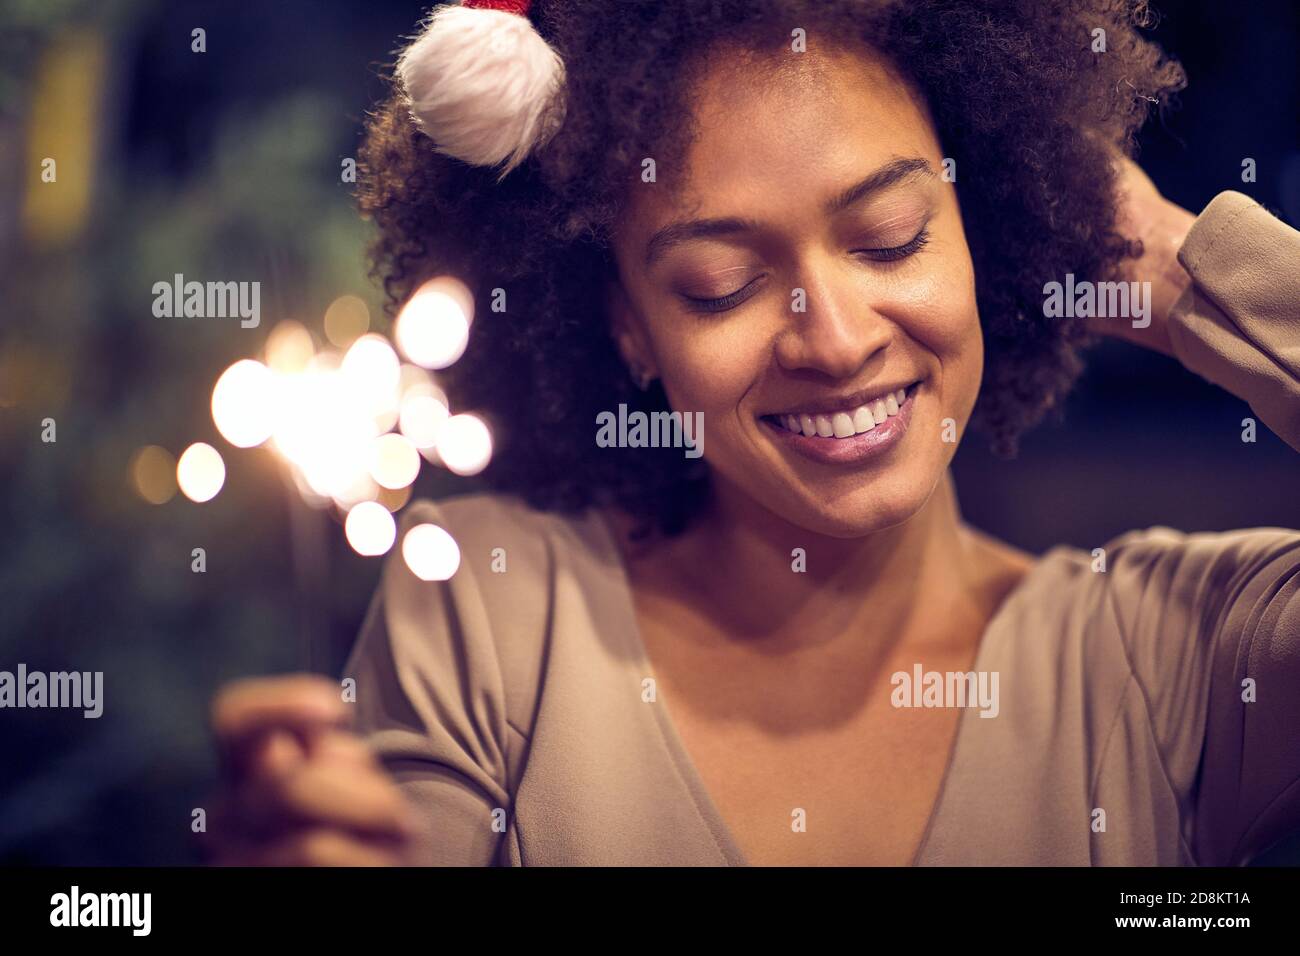 Giovane ragazza felice godendo l'atmosfera festosa a natale o festa di nuovo anno. Natale, amici, divertimento, concetto di festa Foto Stock